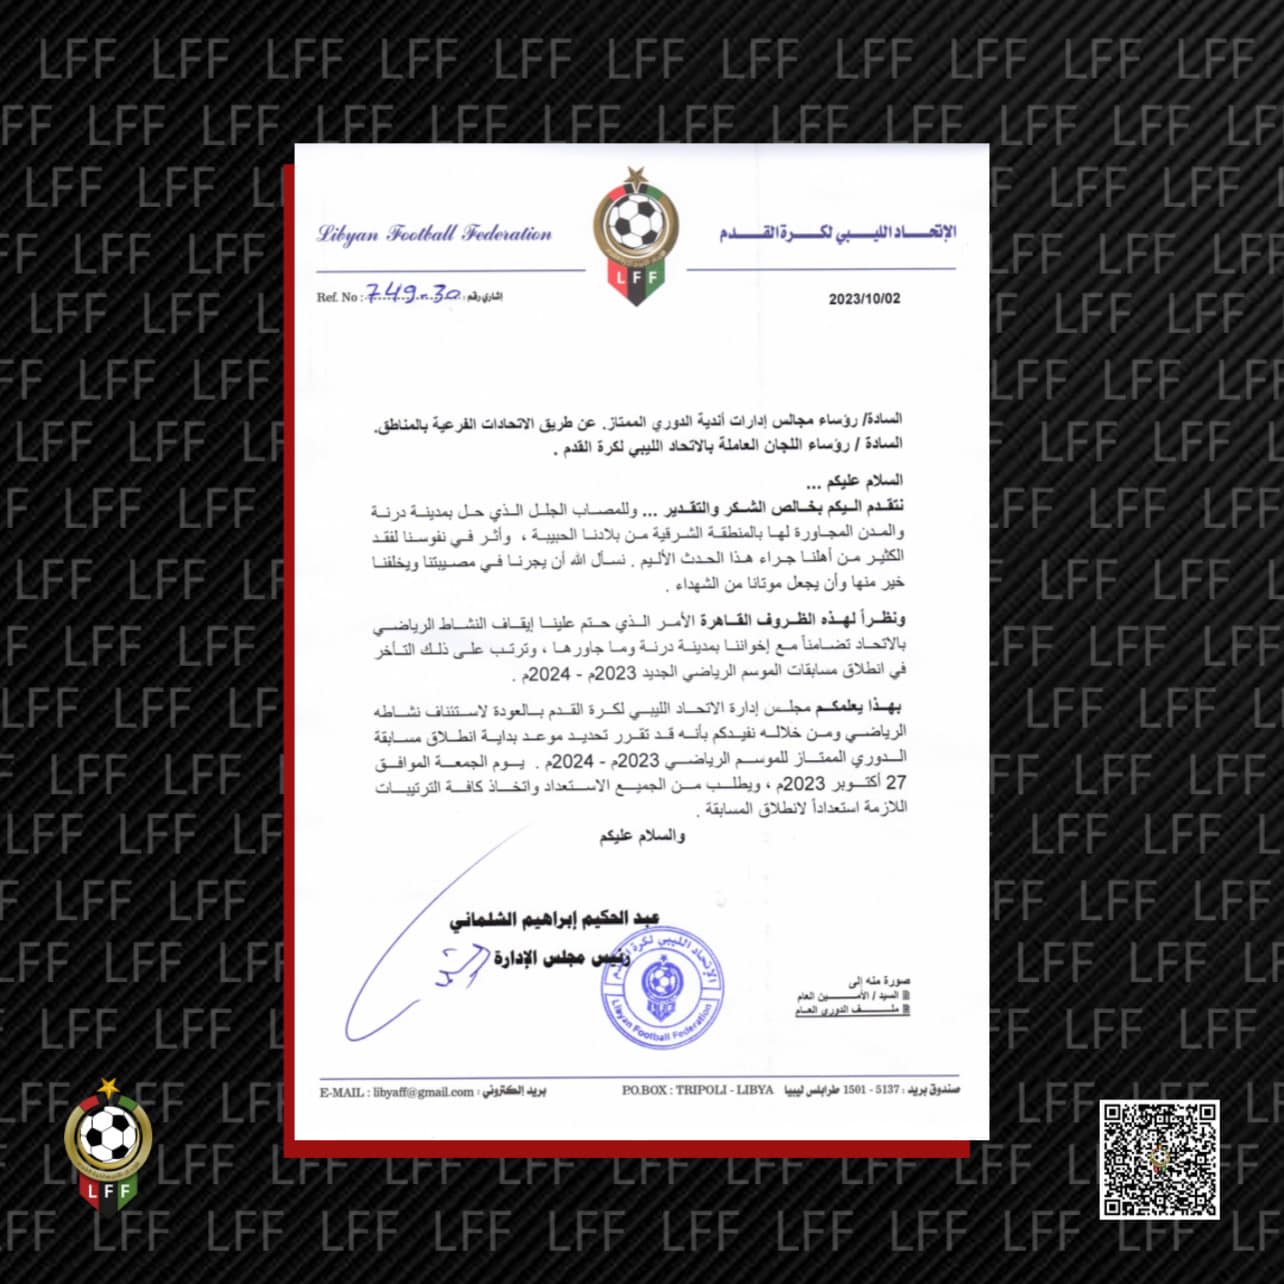 الاتحاد الليبي لكرة القدم يكشف عن موعد انطلاق مسابقة الدوري الممتاز للموسم الرياضي 2023م-2024م.